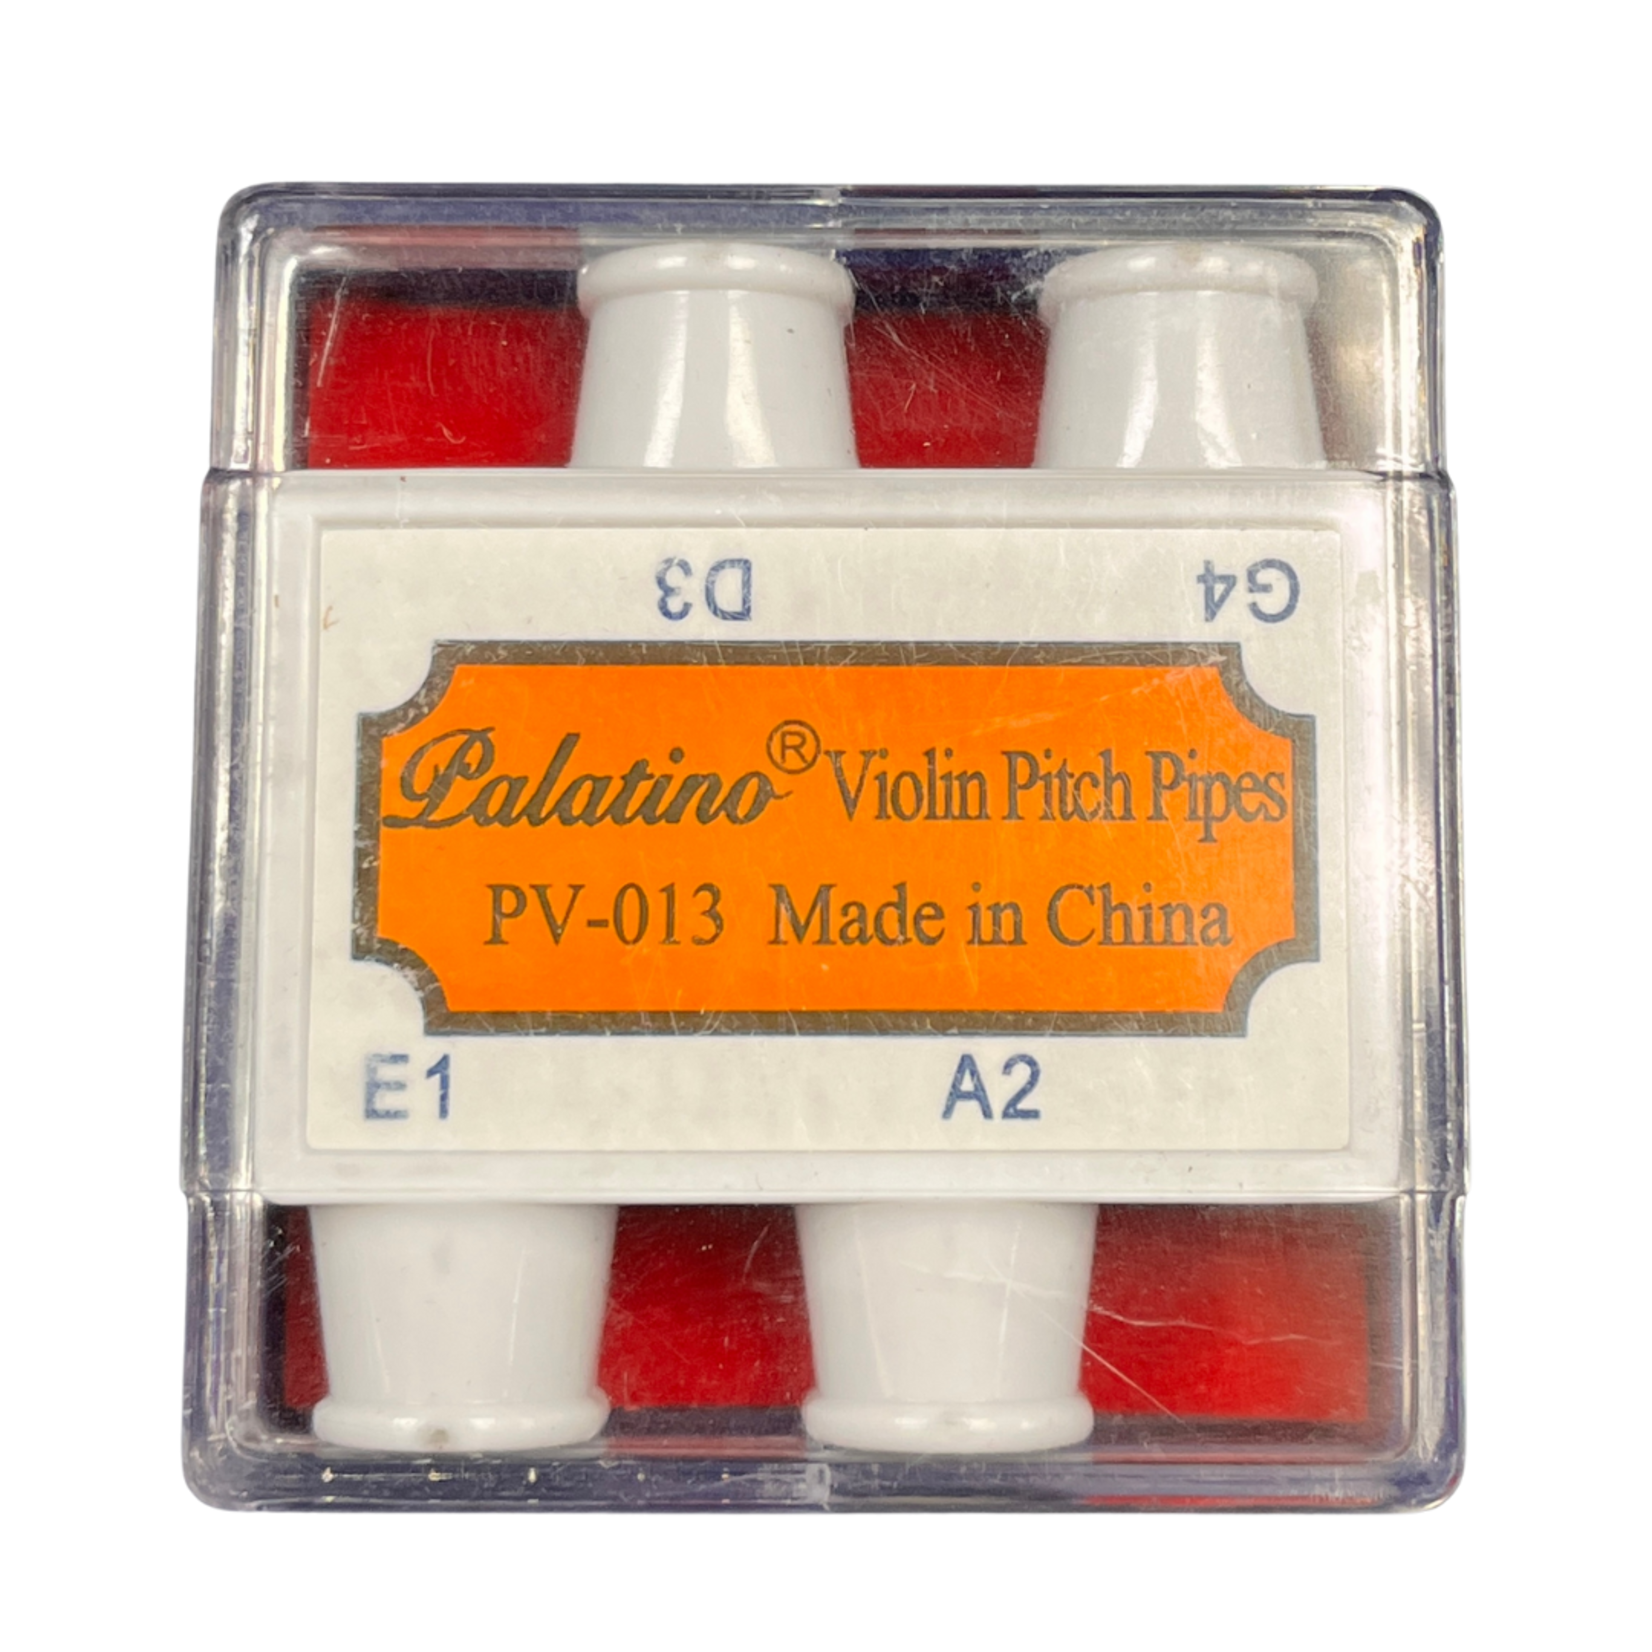 Palatino PV-013 Violin Pitch Pipes